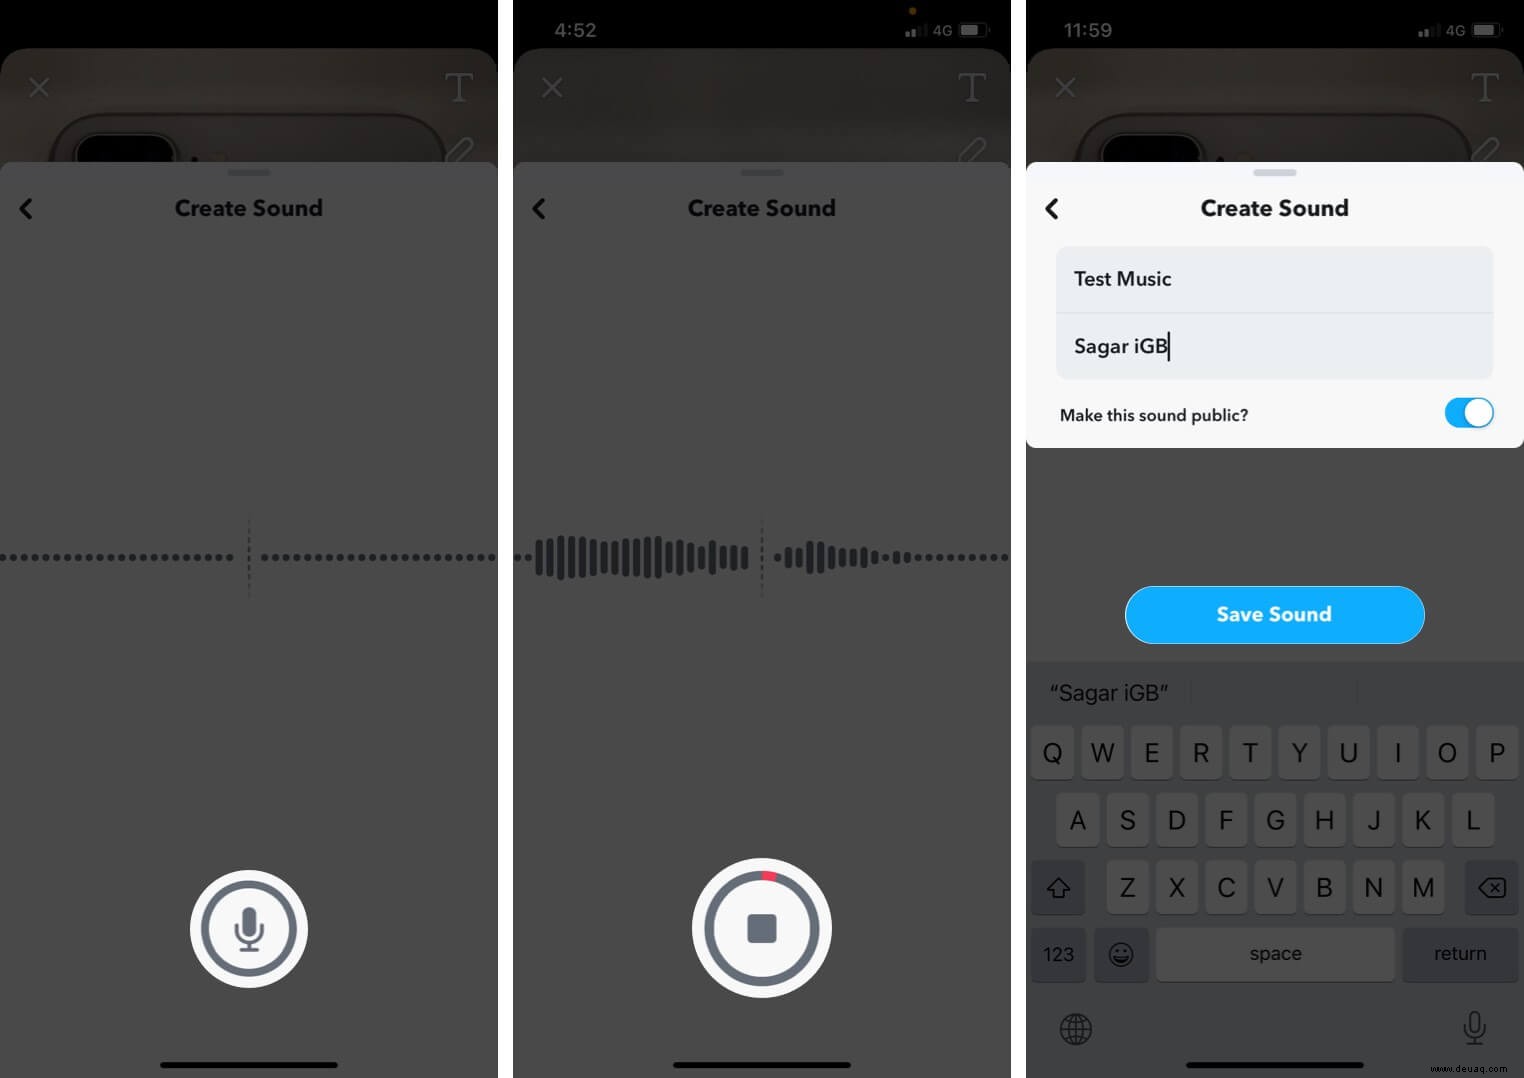 So fügen Sie Ihren Snapchat-Geschichten auf dem iPhone Musik hinzu 